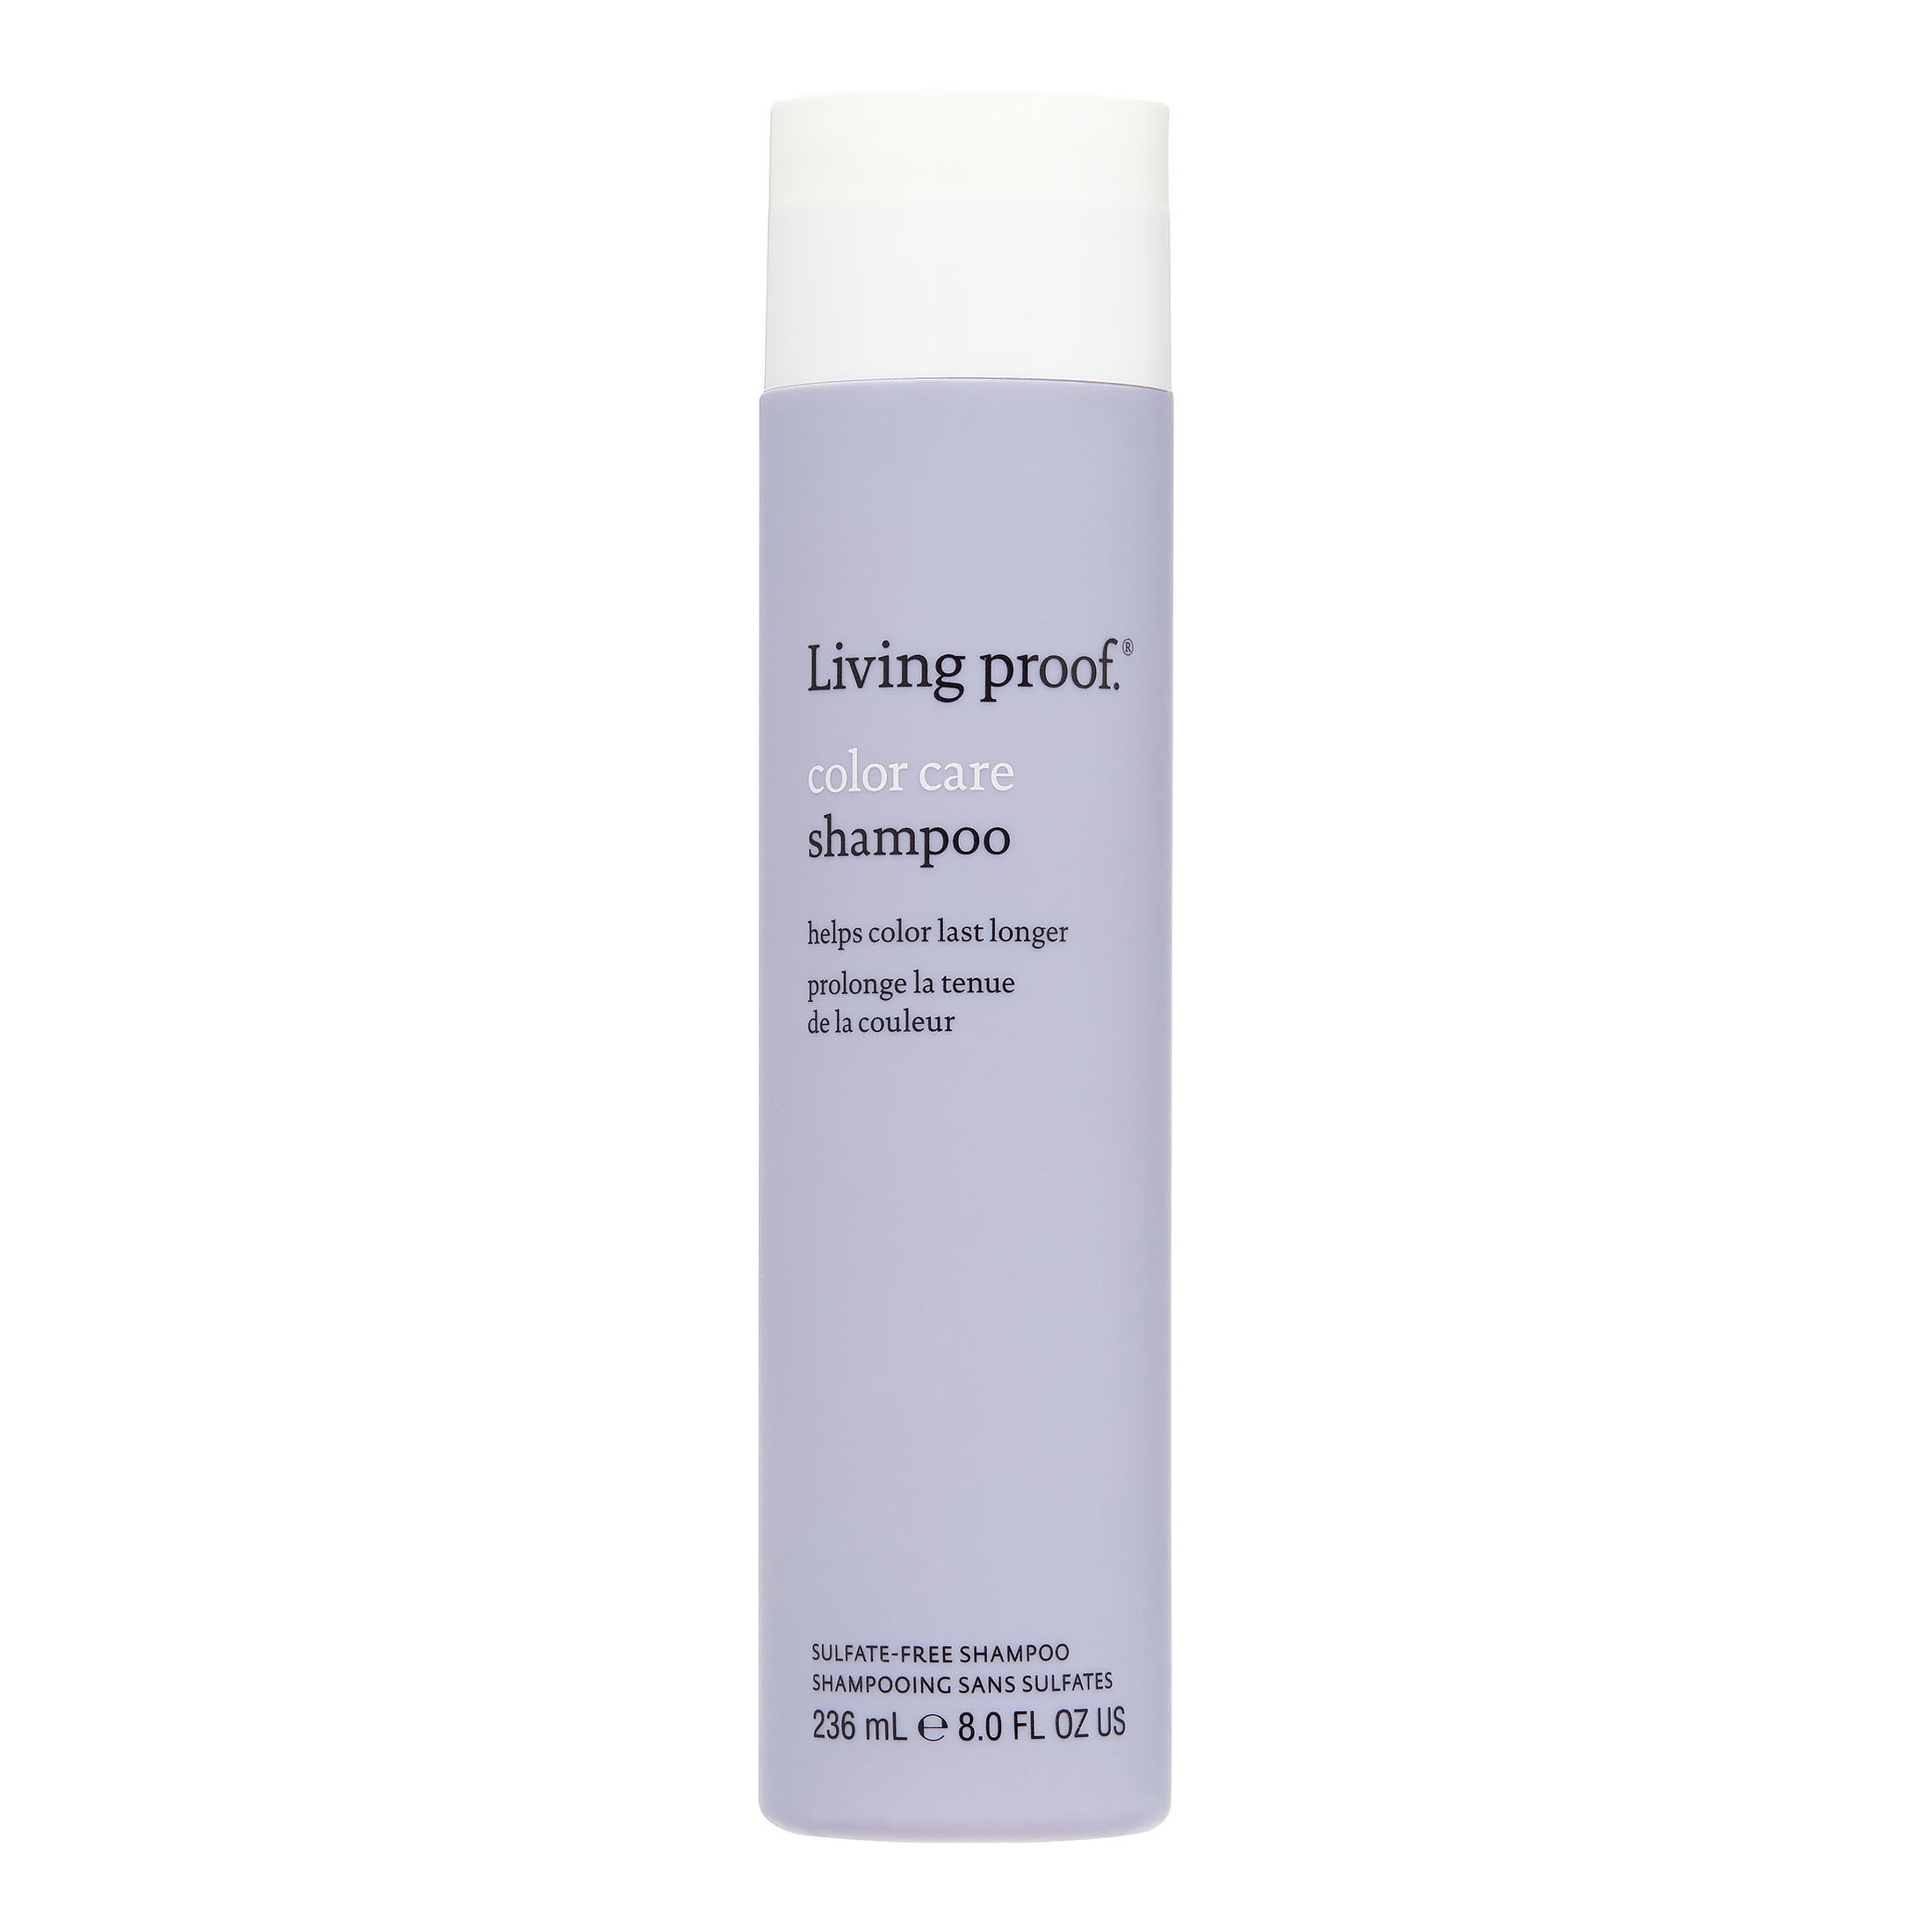 Living Proof Care UV Protection Daily Shampoo, 8 fl - Walmart.com